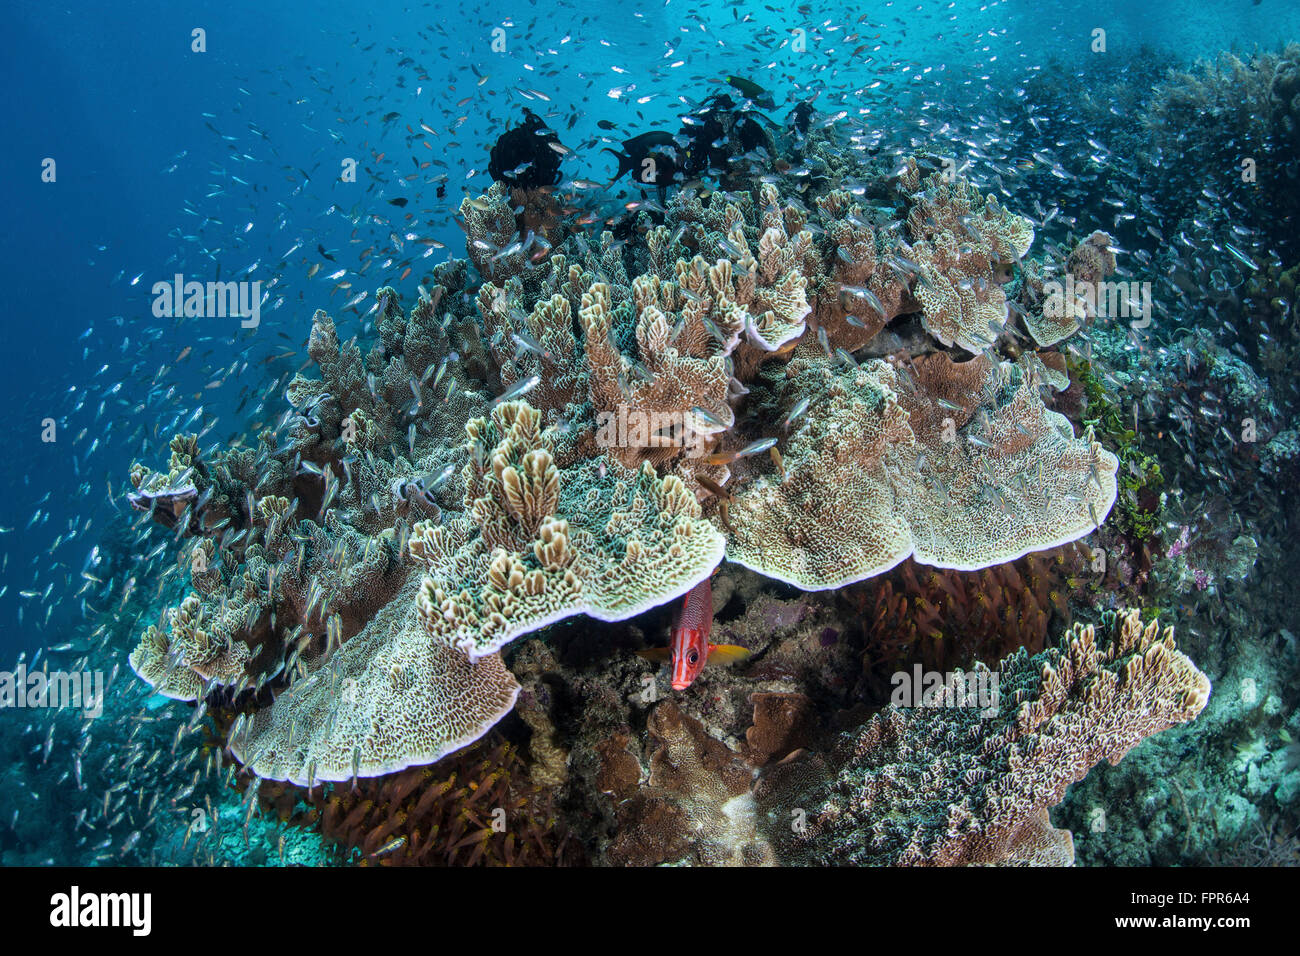 Il novellame sciame attorno ad una colonia di corallo in Raja Ampat, Indonesia. Questa remota regione è conosciuta come il cuore del corallo Triang Foto Stock